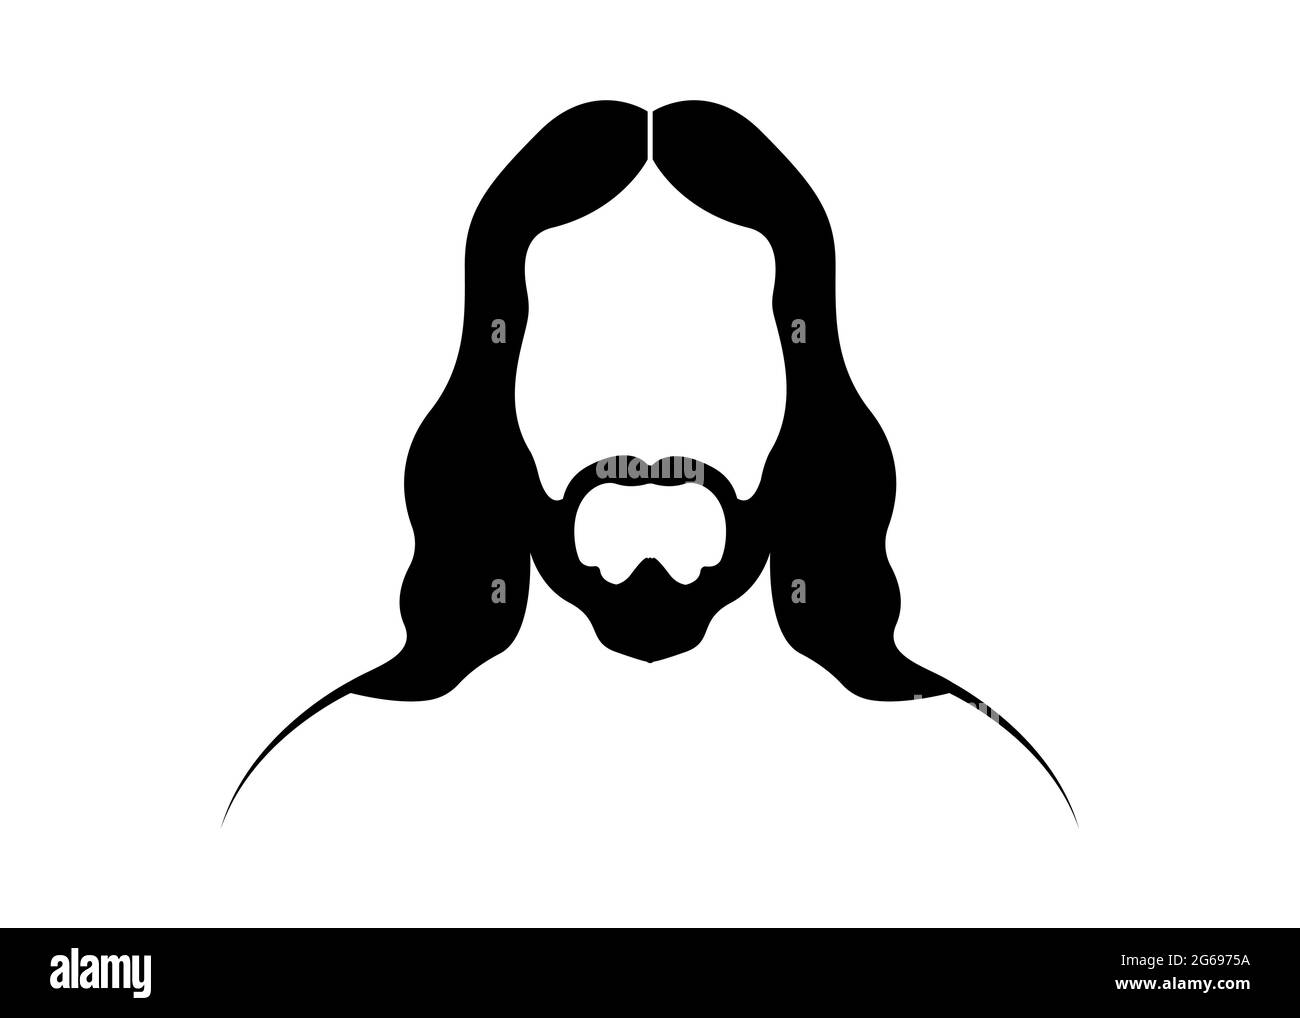 Jésus Christ, portrait graphique vecteur silhouette noire isolée sur fond blanc Illustration de Vecteur